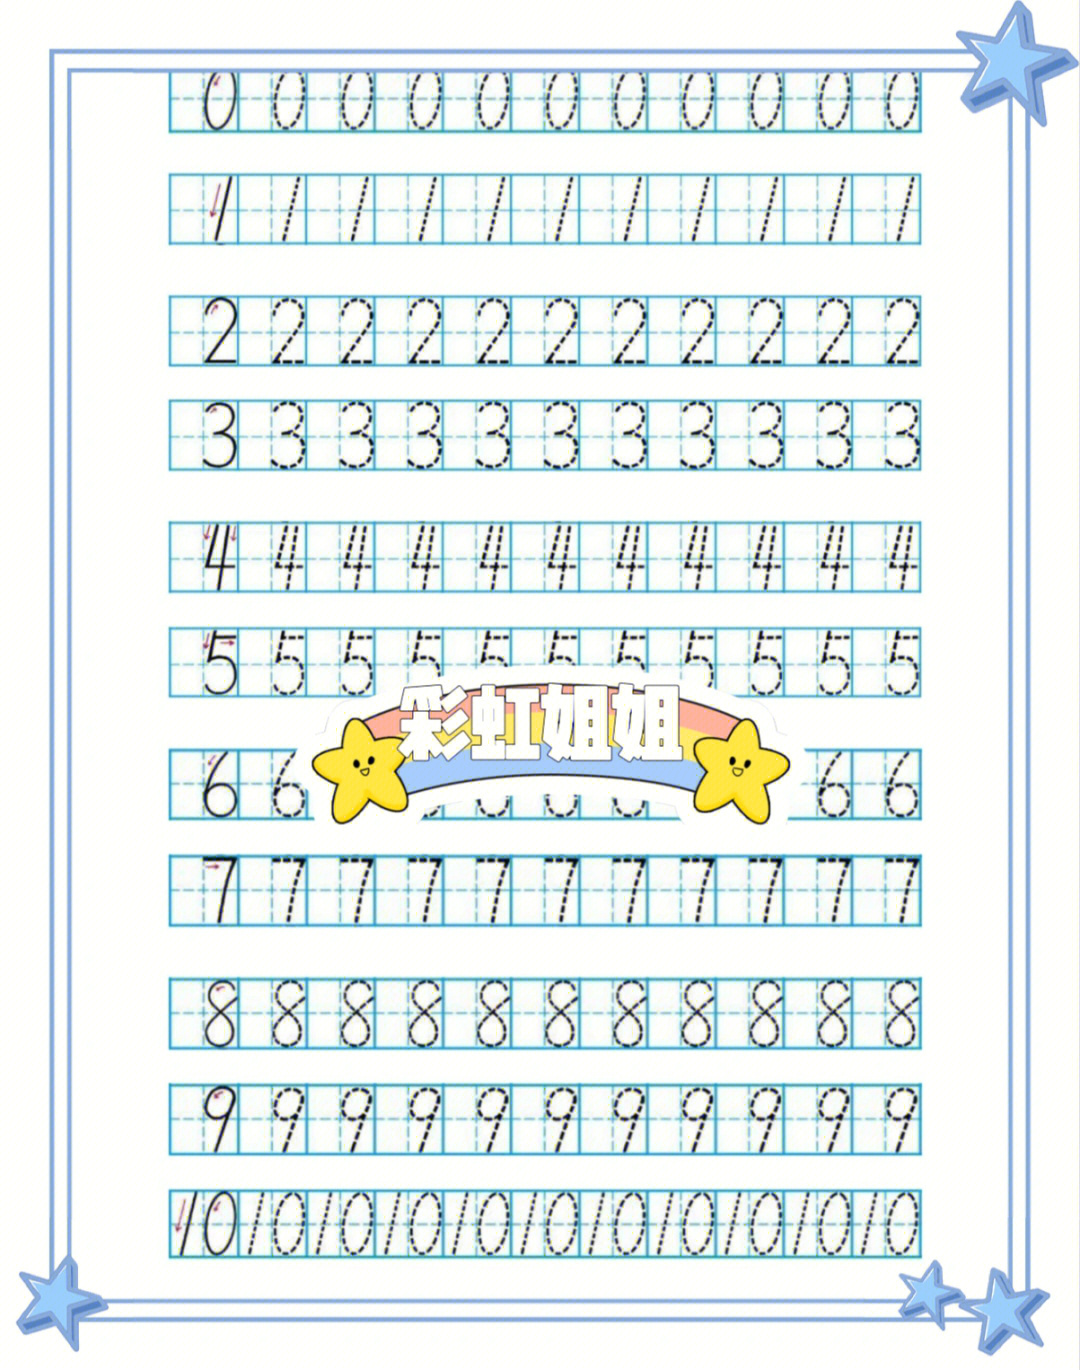 11-20数字写法田字格图片